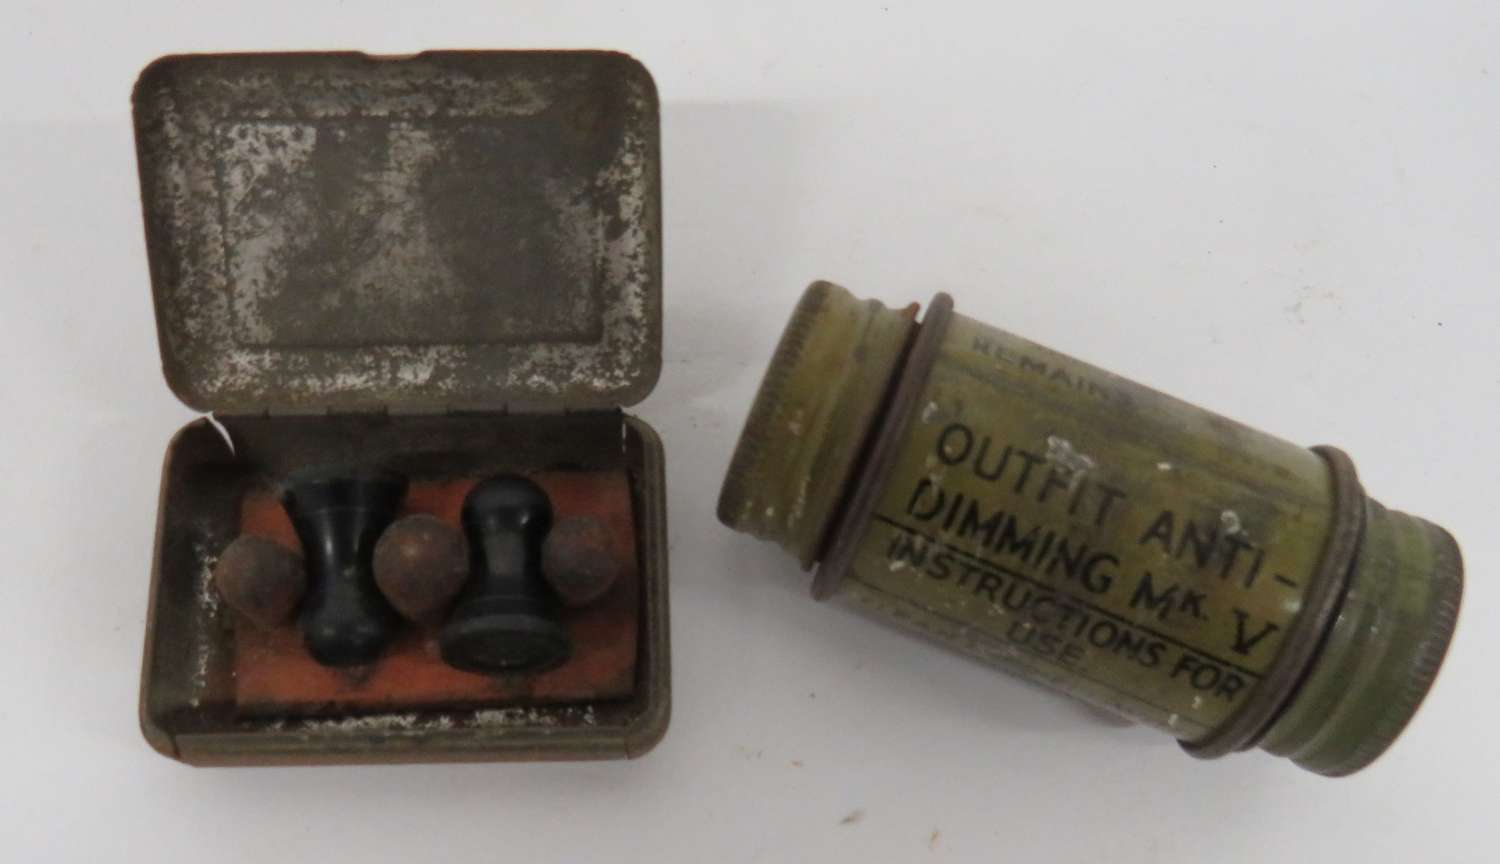 Pair of WW2 Earplugs and Anti Dimming Tin